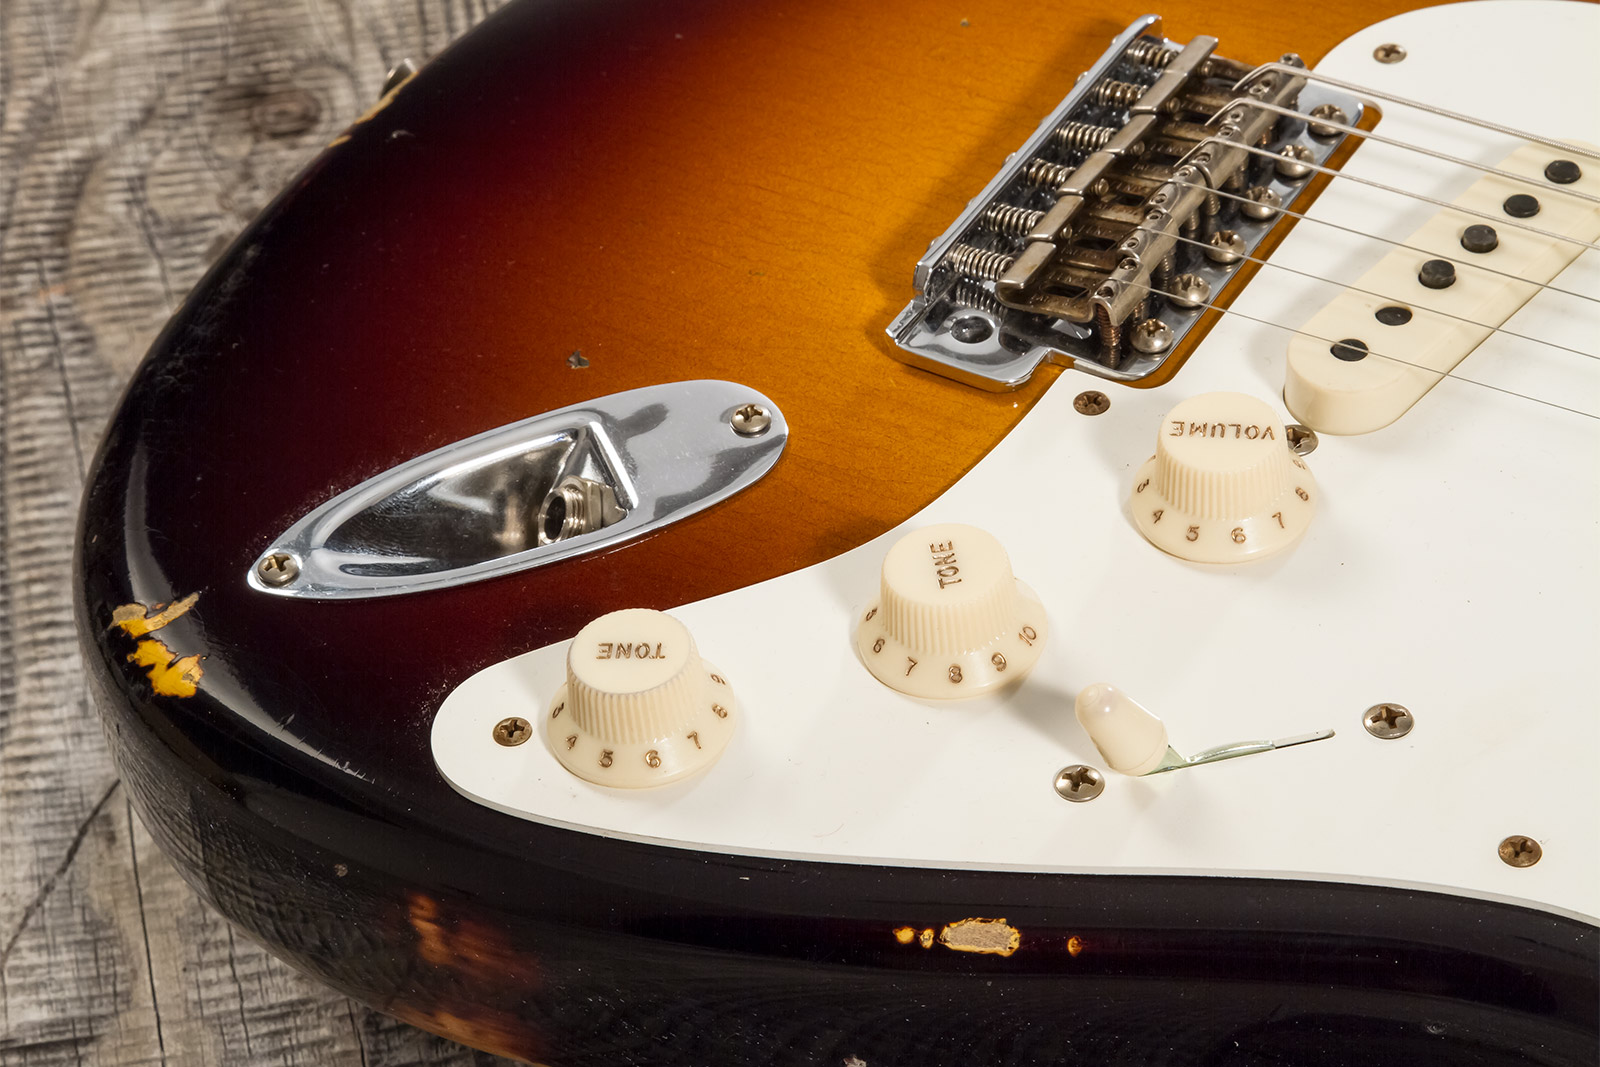 Fender Custom Shop Strat 1957 3s Trem Mn #cz571791 - Relic Wide Fade 2-color Sunburst - Str shape electric guitar - Variation 3